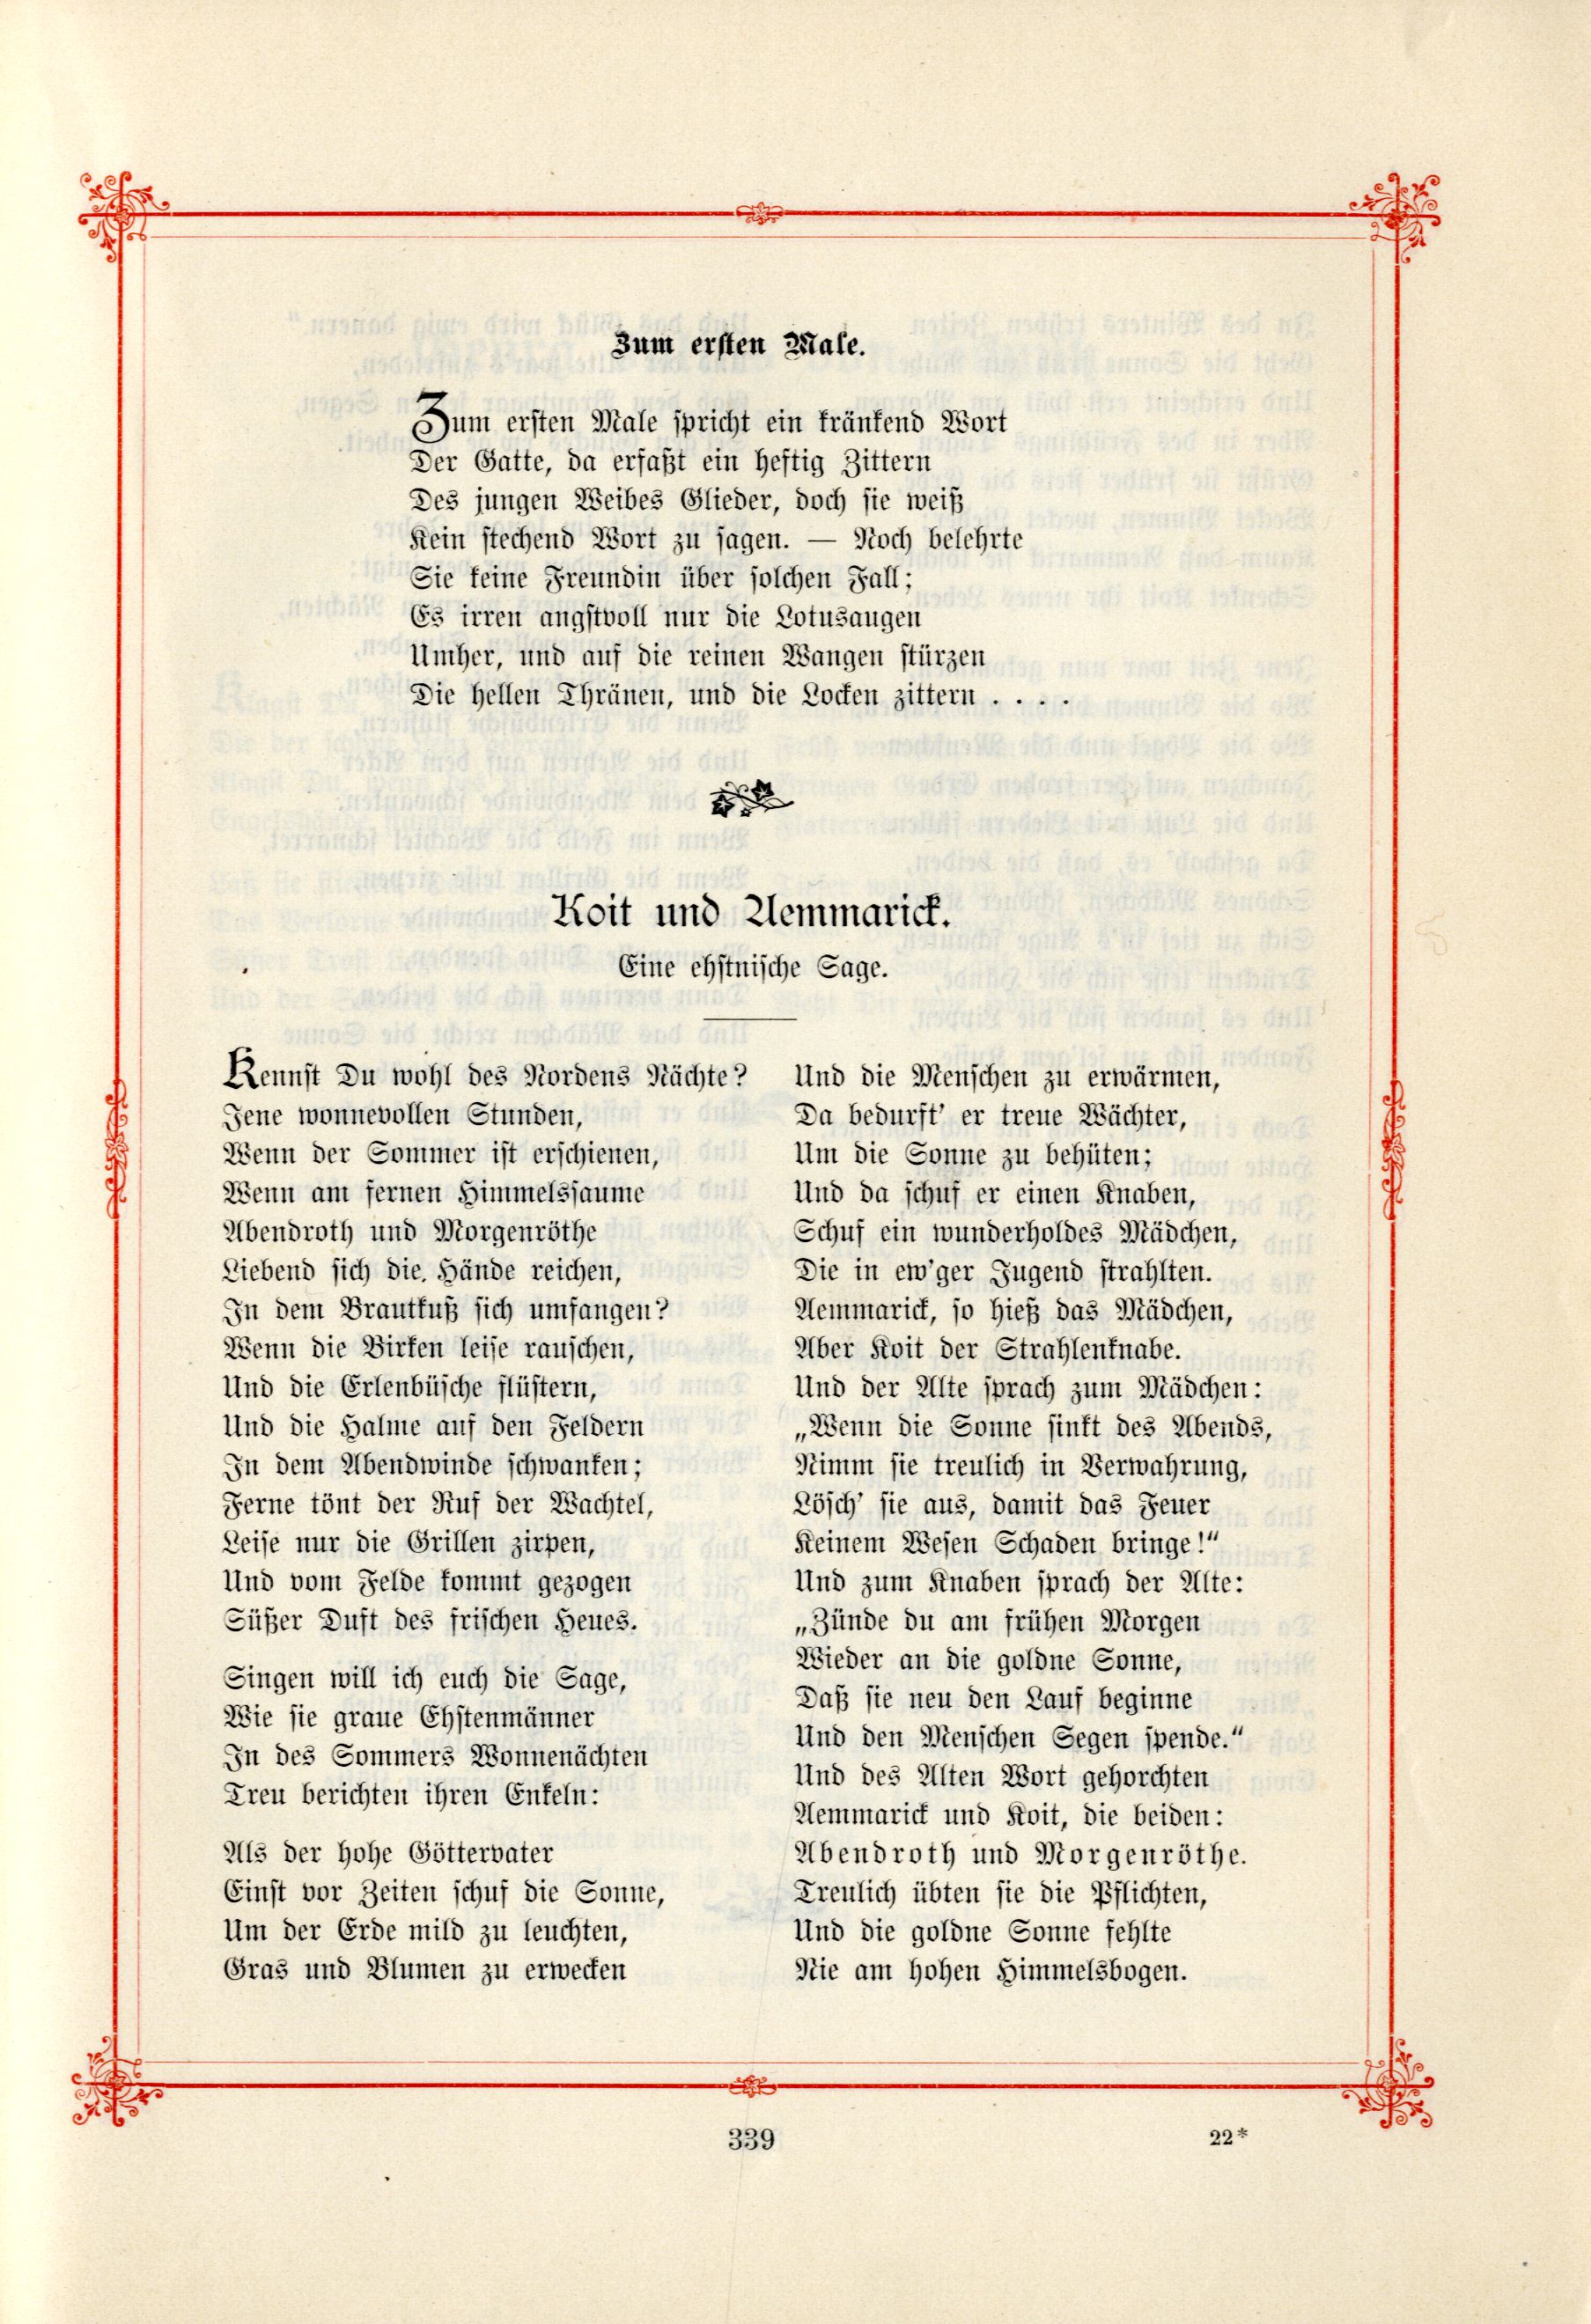 Zum ersten Male (1895) | 1. (339) Main body of text